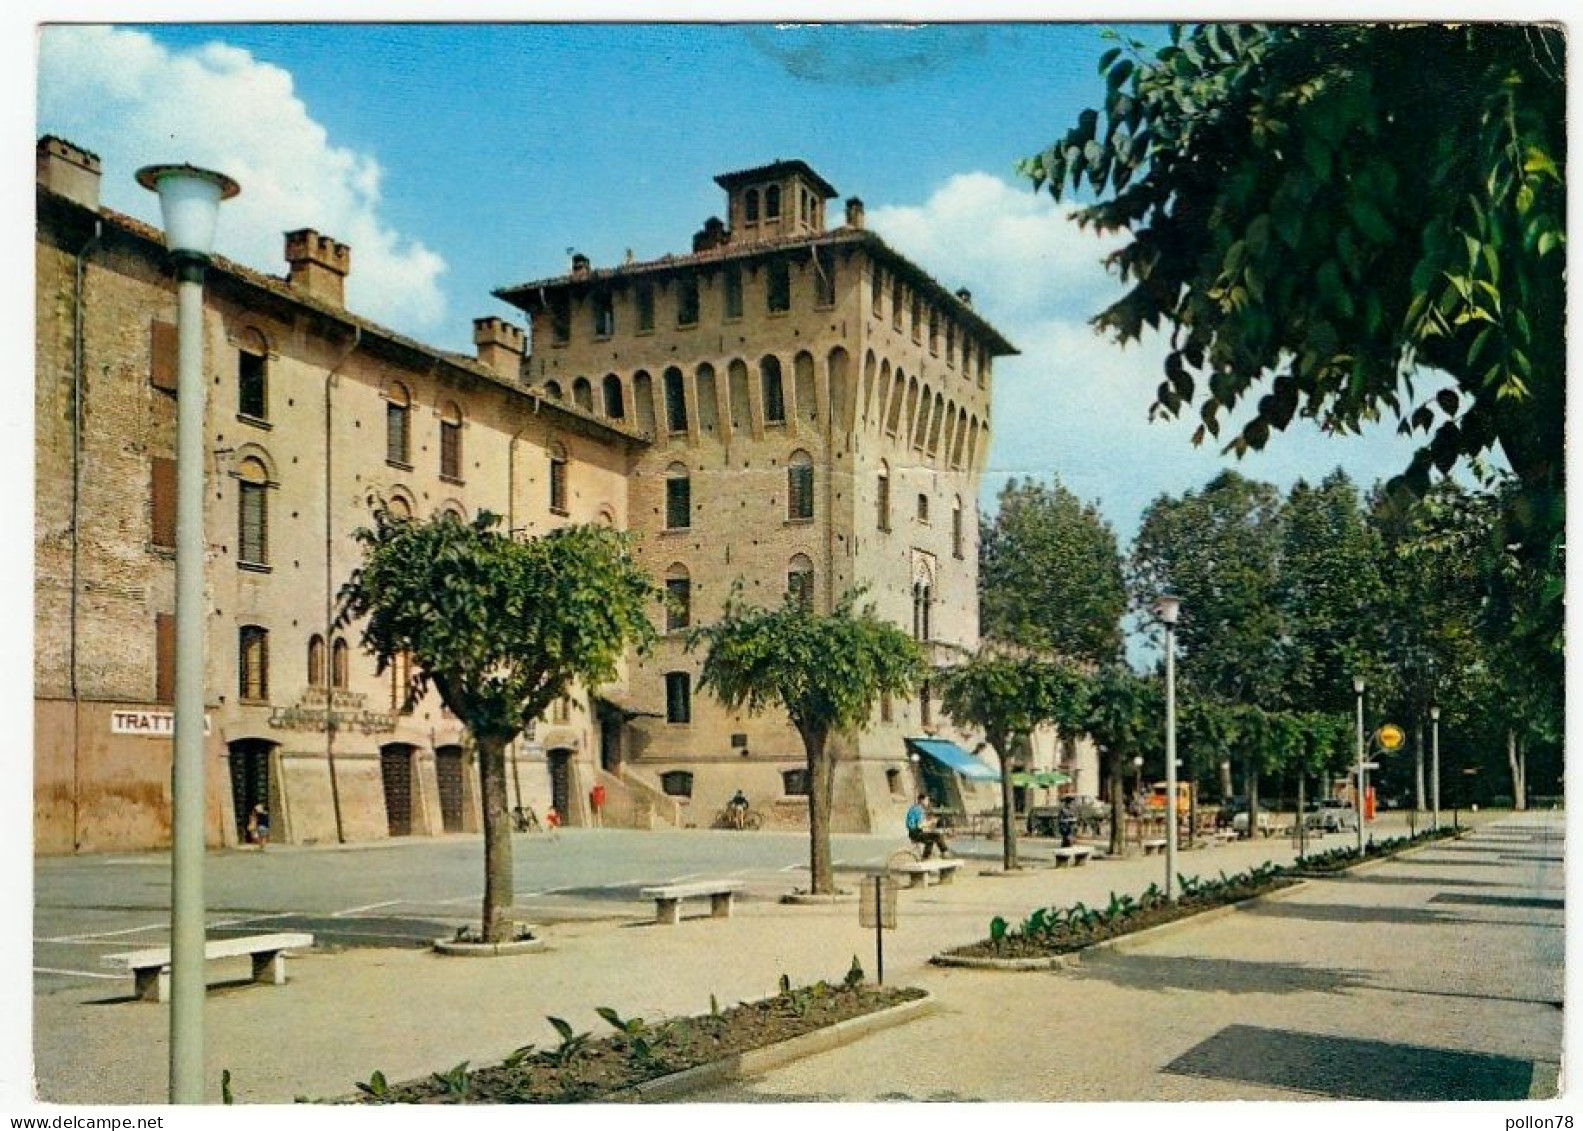 MIRANDOLA - IL CASTELLO - MODENA - 1965 - Modena